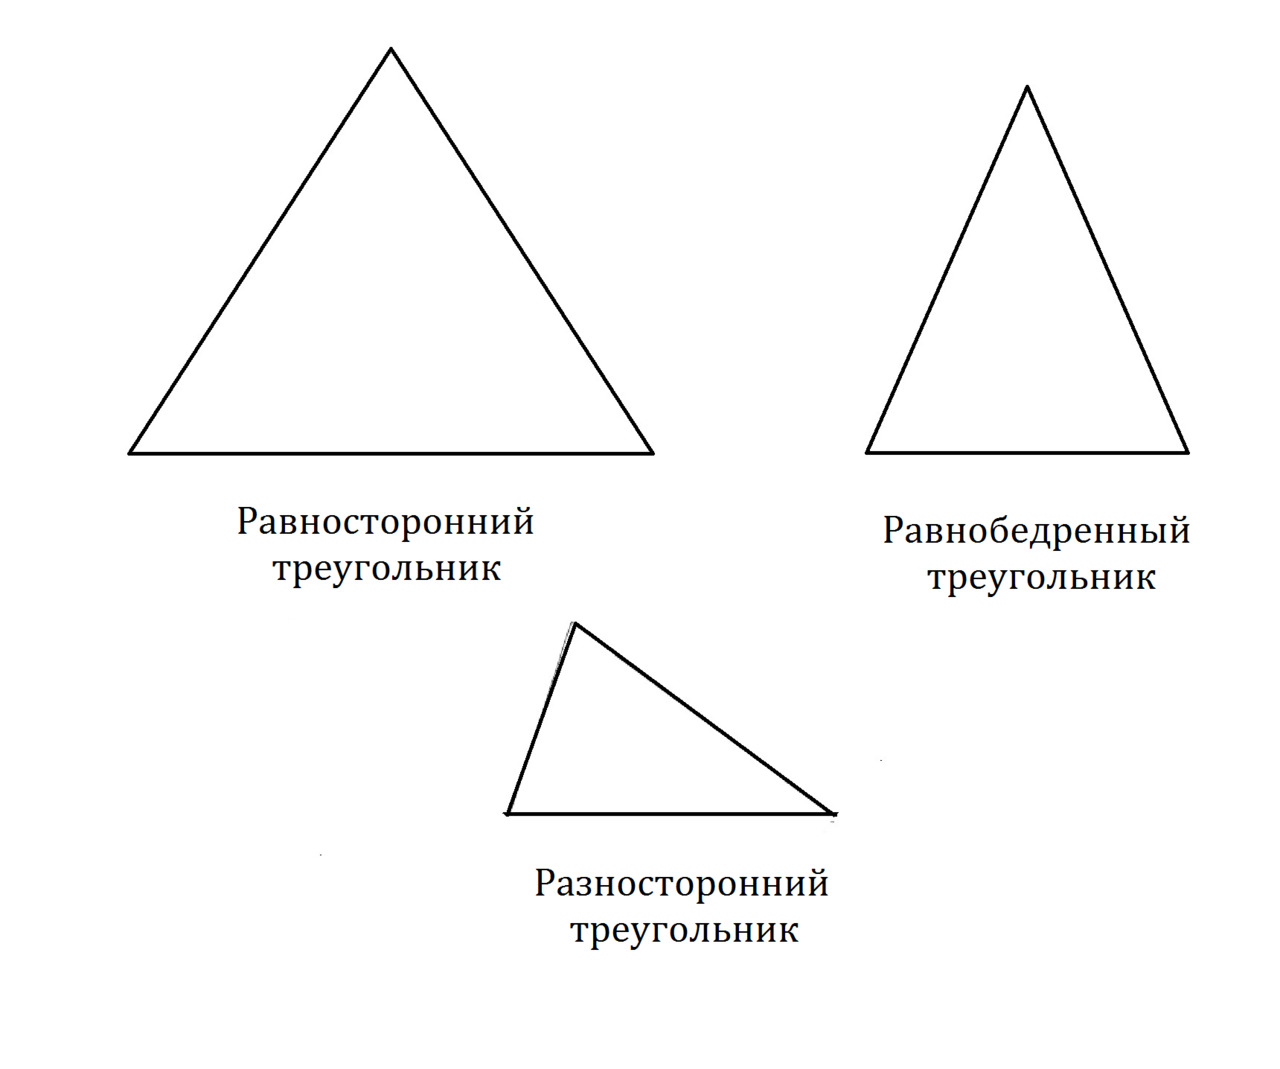 Какой треугольник равнобедренный а какой равносторонний. Равнобедренный и равносторонний треугольник. Равносторонний и равнобедренный тр. Треугольник равнобедренный, равносторонний, разносторонные. Равносторонний и разносторонний треугольник.